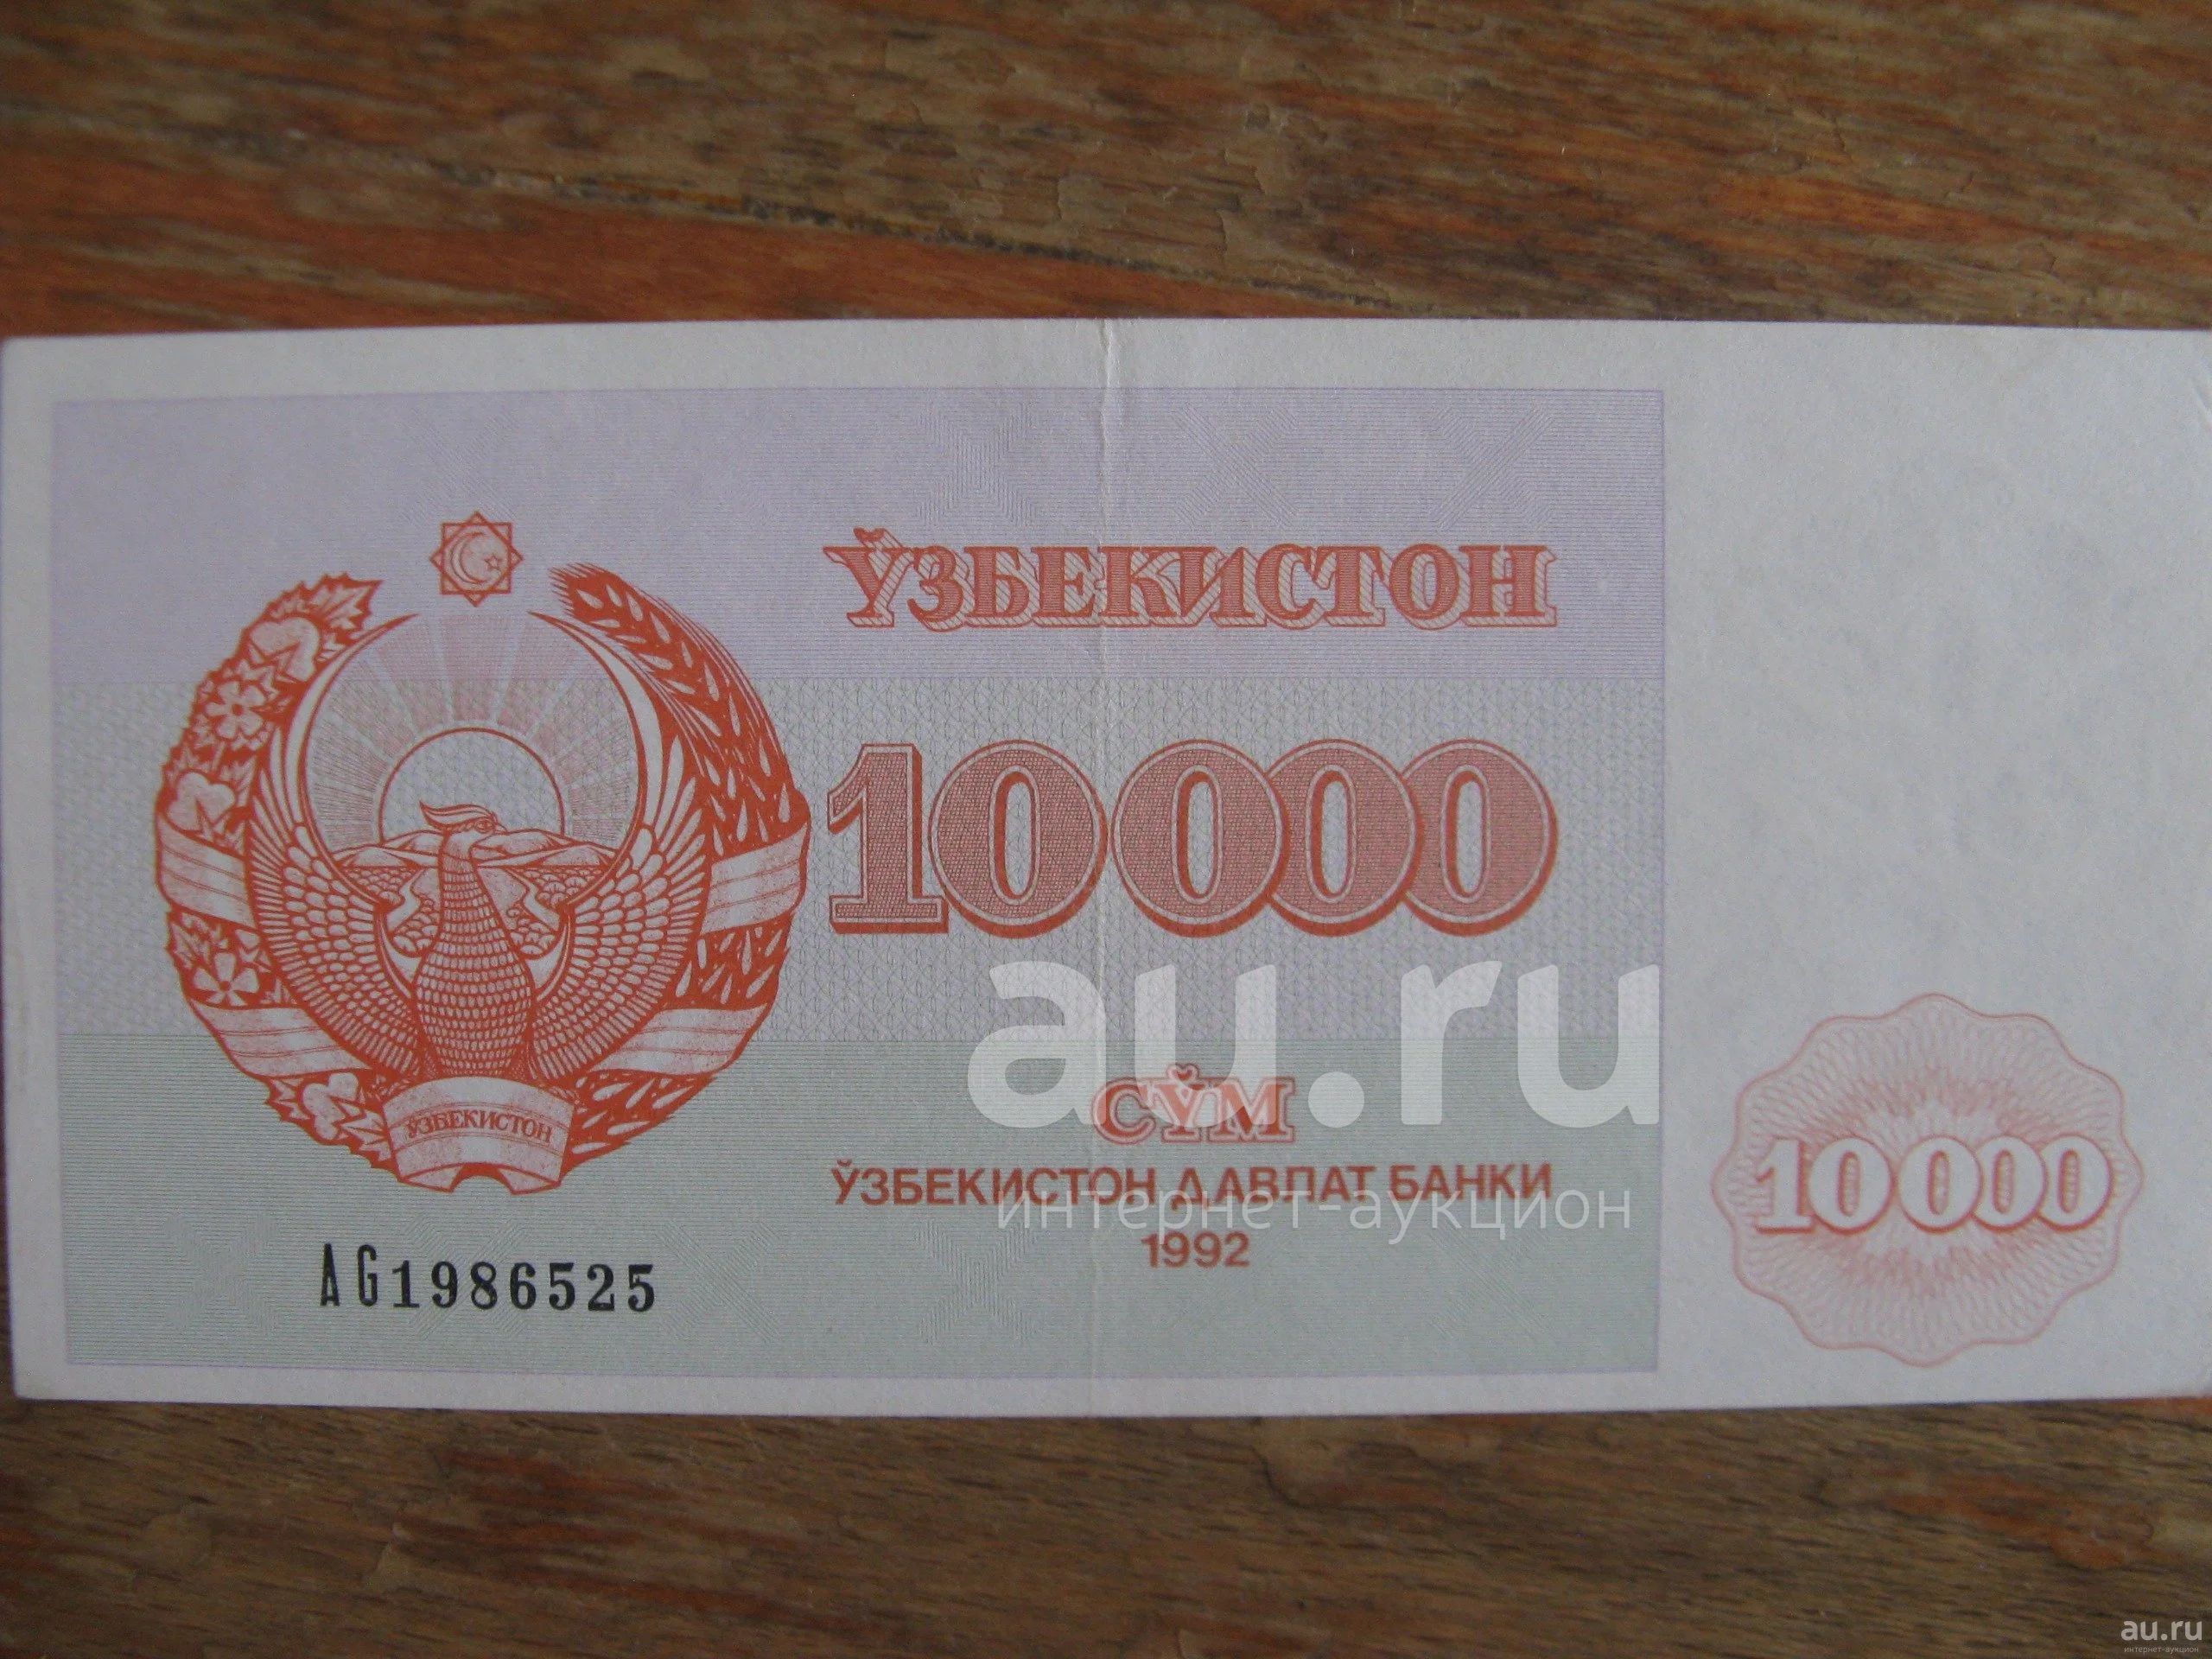 90 сум. Конверт с сумой 10000 рублей. Сколько стоит 10000 сум в рублях.